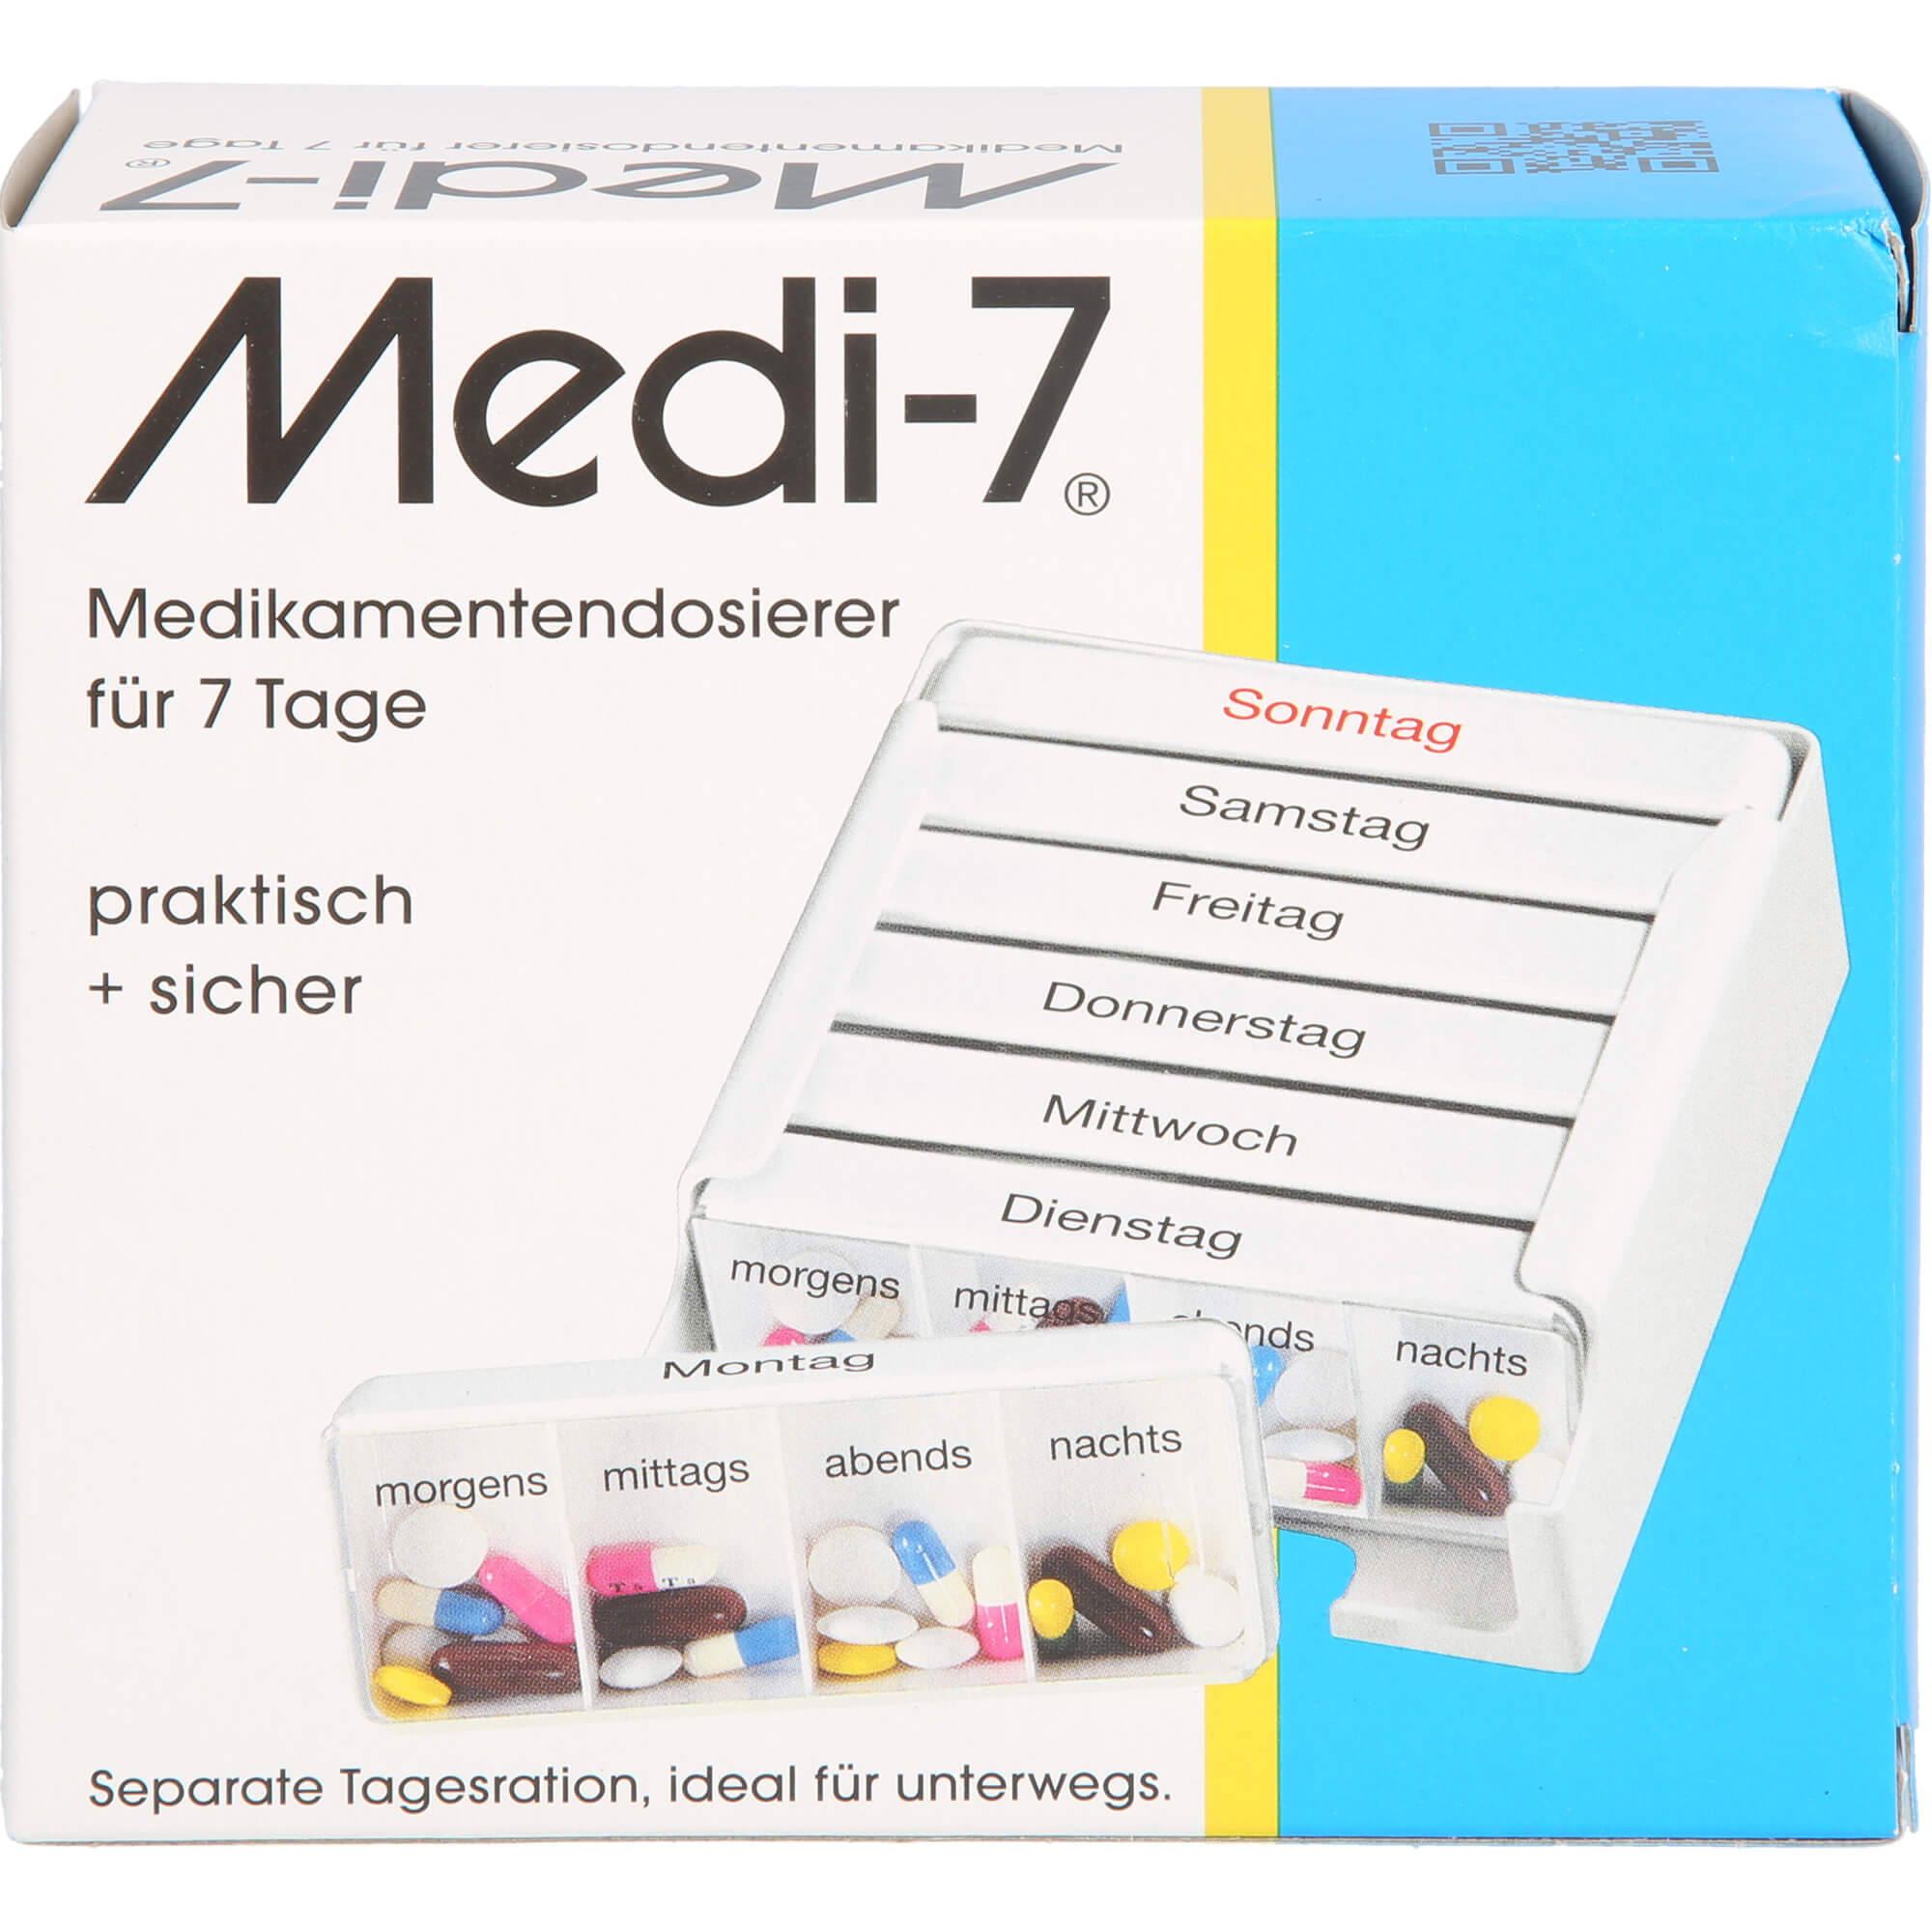 MEDI 7 Medikamentendosierer für 7 Tage - weiß